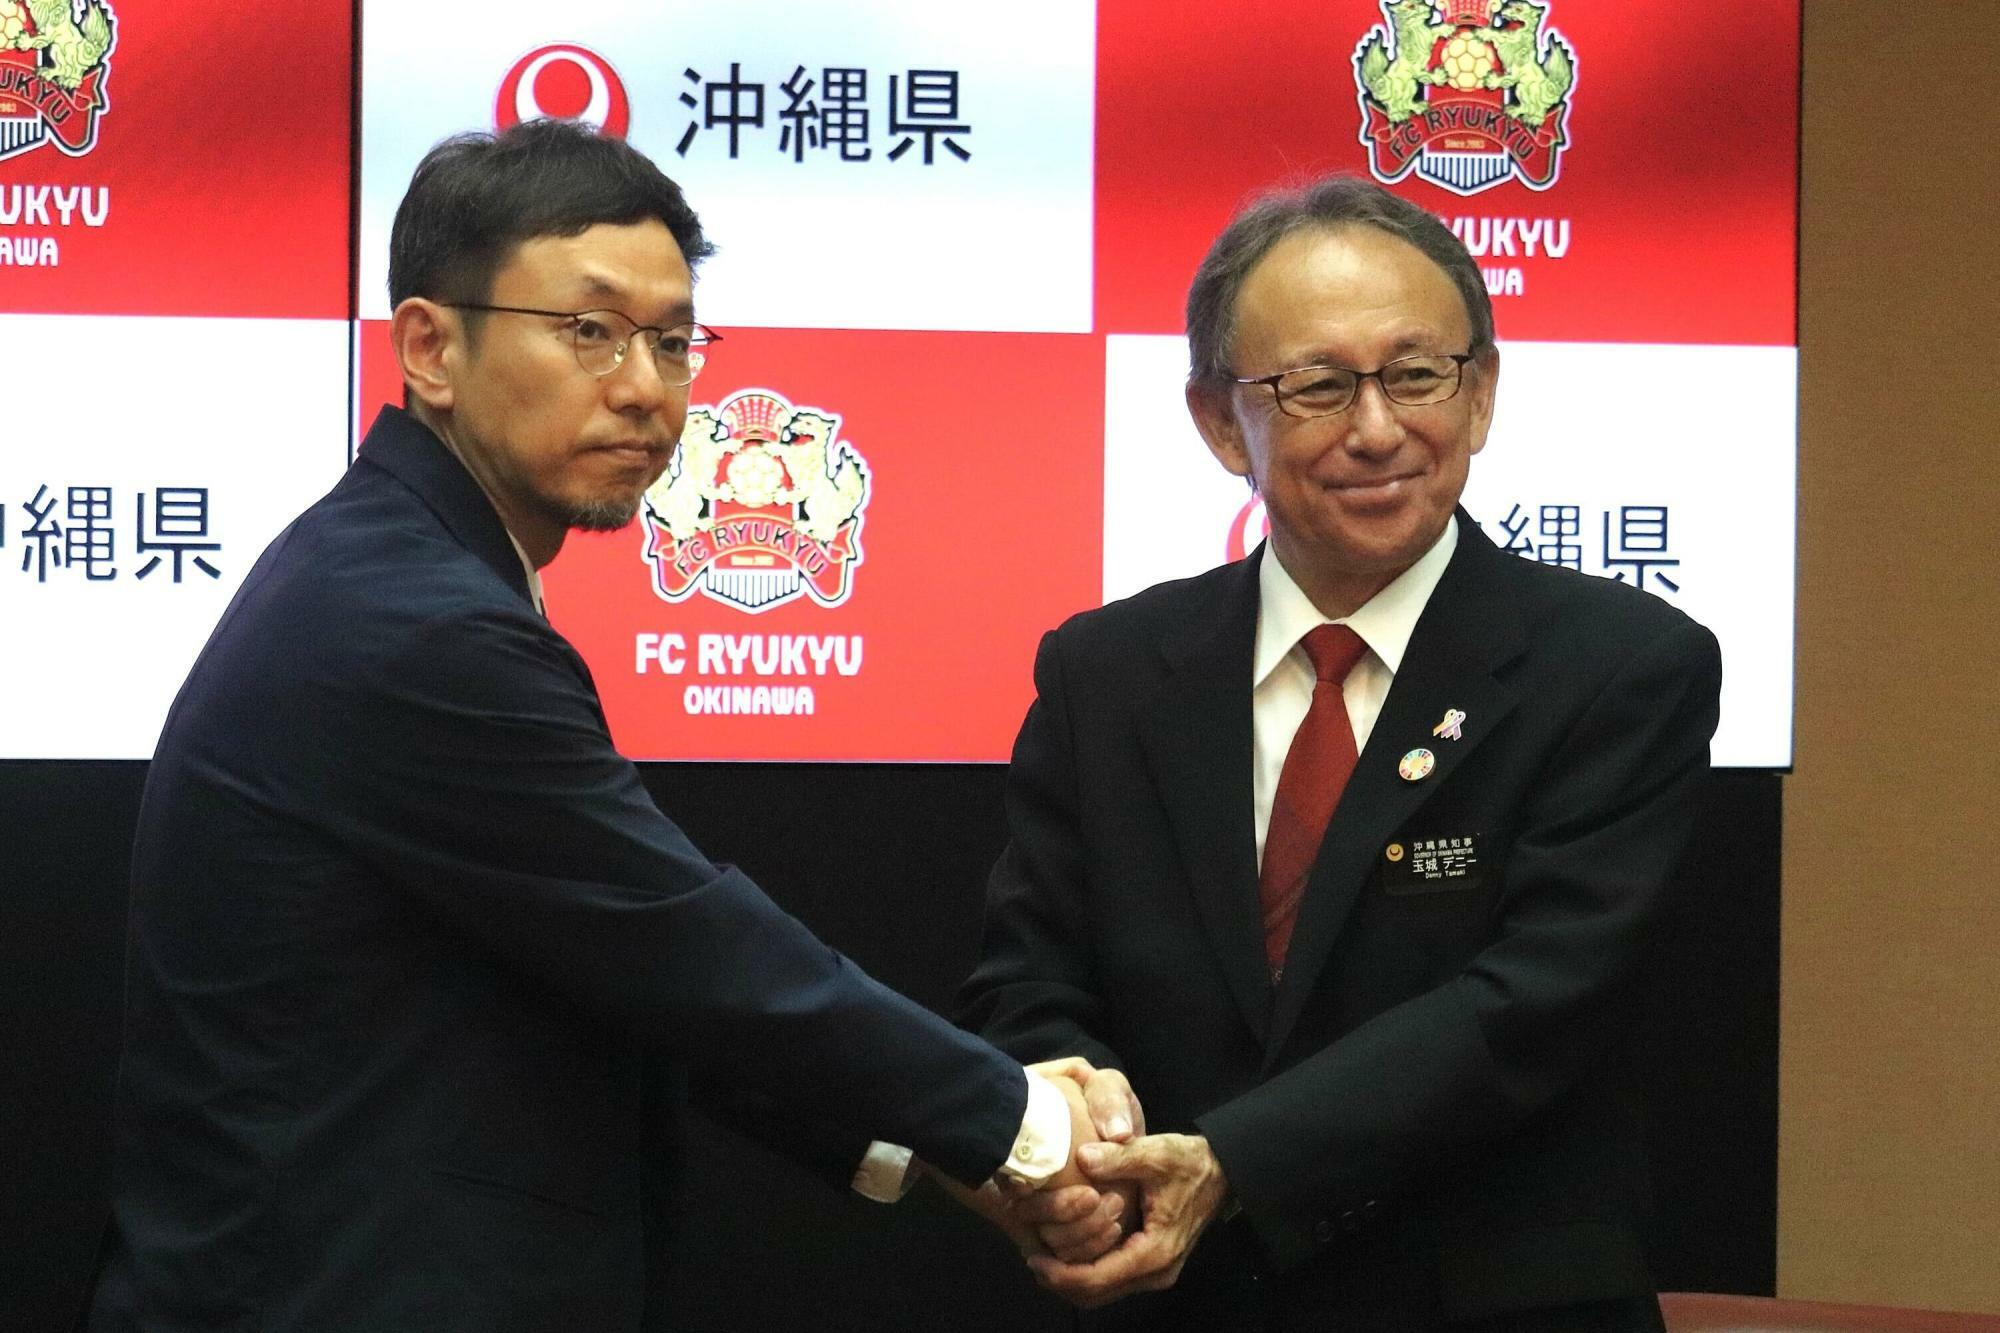 記者会見で握手する玉城デニー知事と柳澤大輔氏。柳澤氏はクラブ経営だけでなく地域資本主義の発展も視野に入れている。